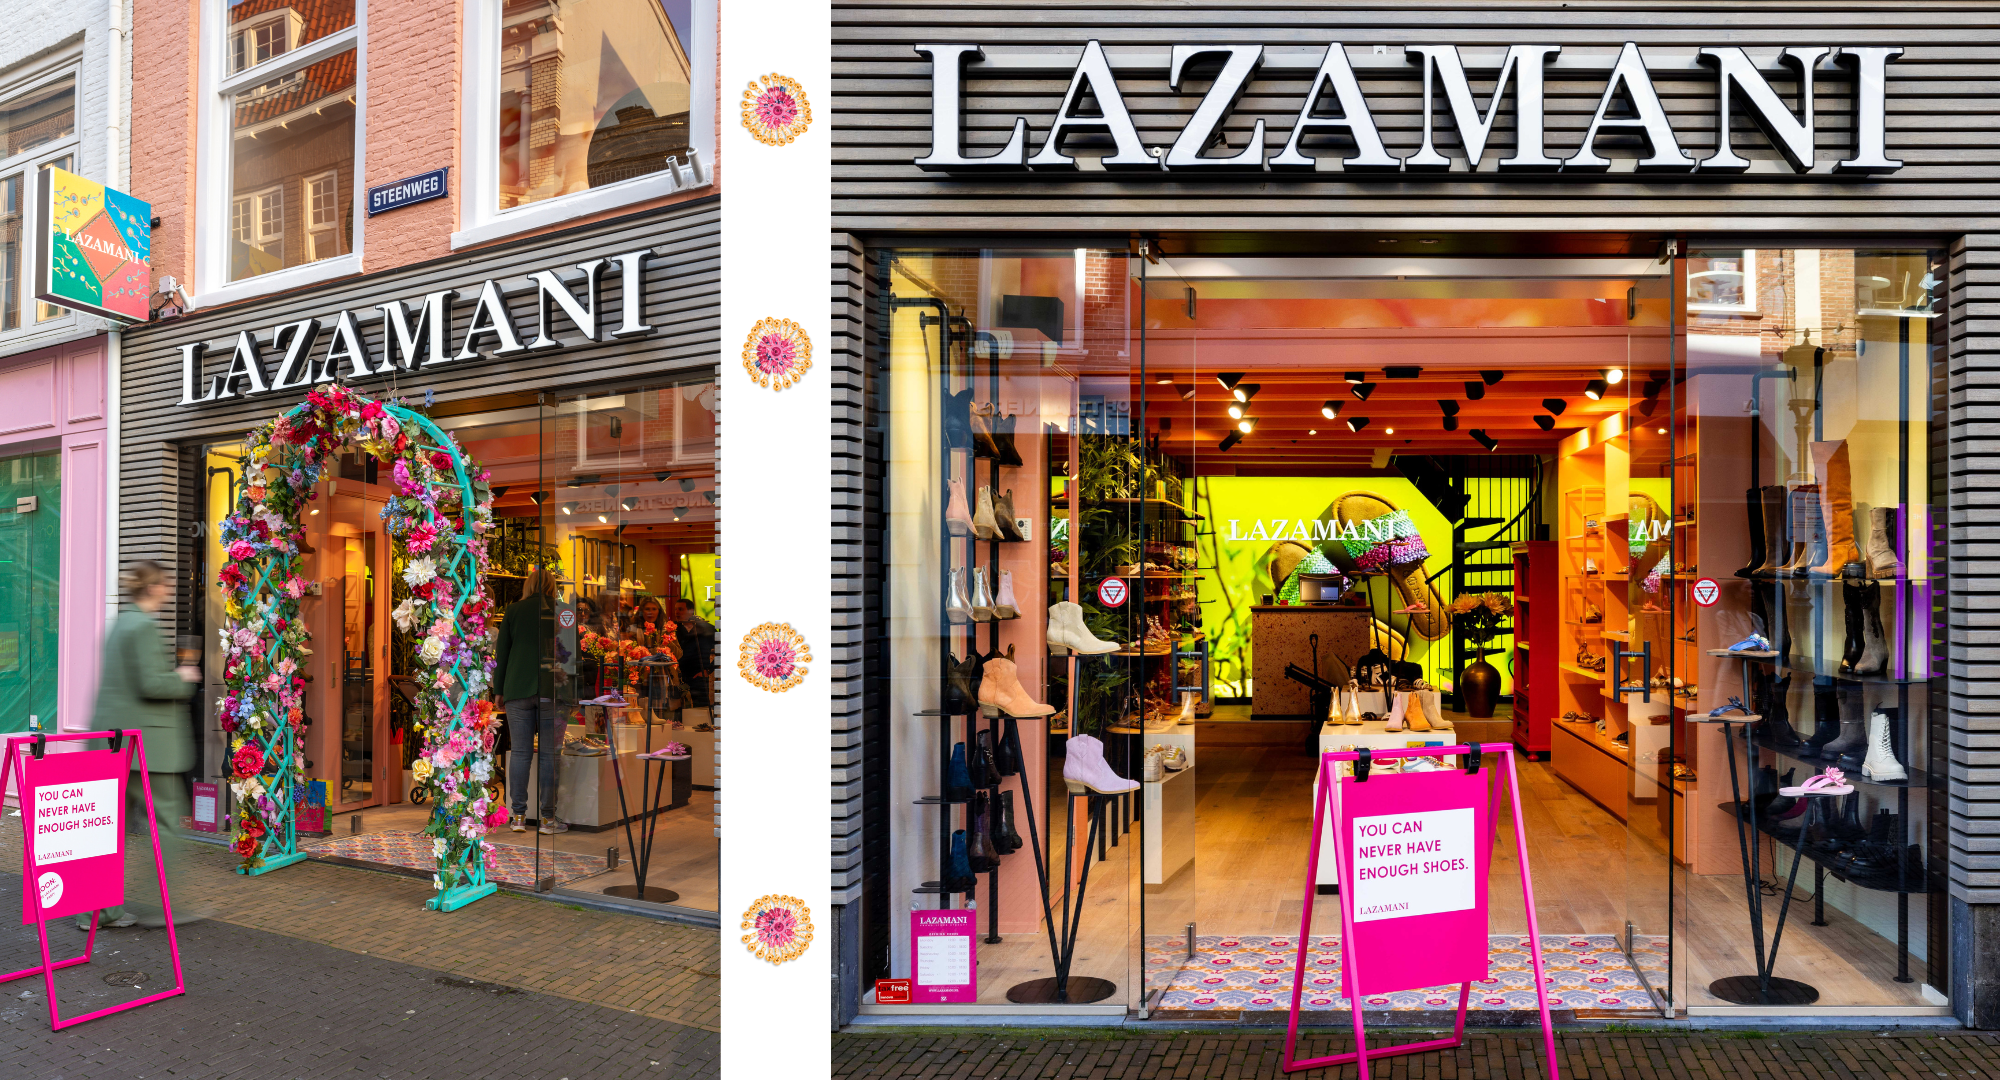 Lazamani brand store